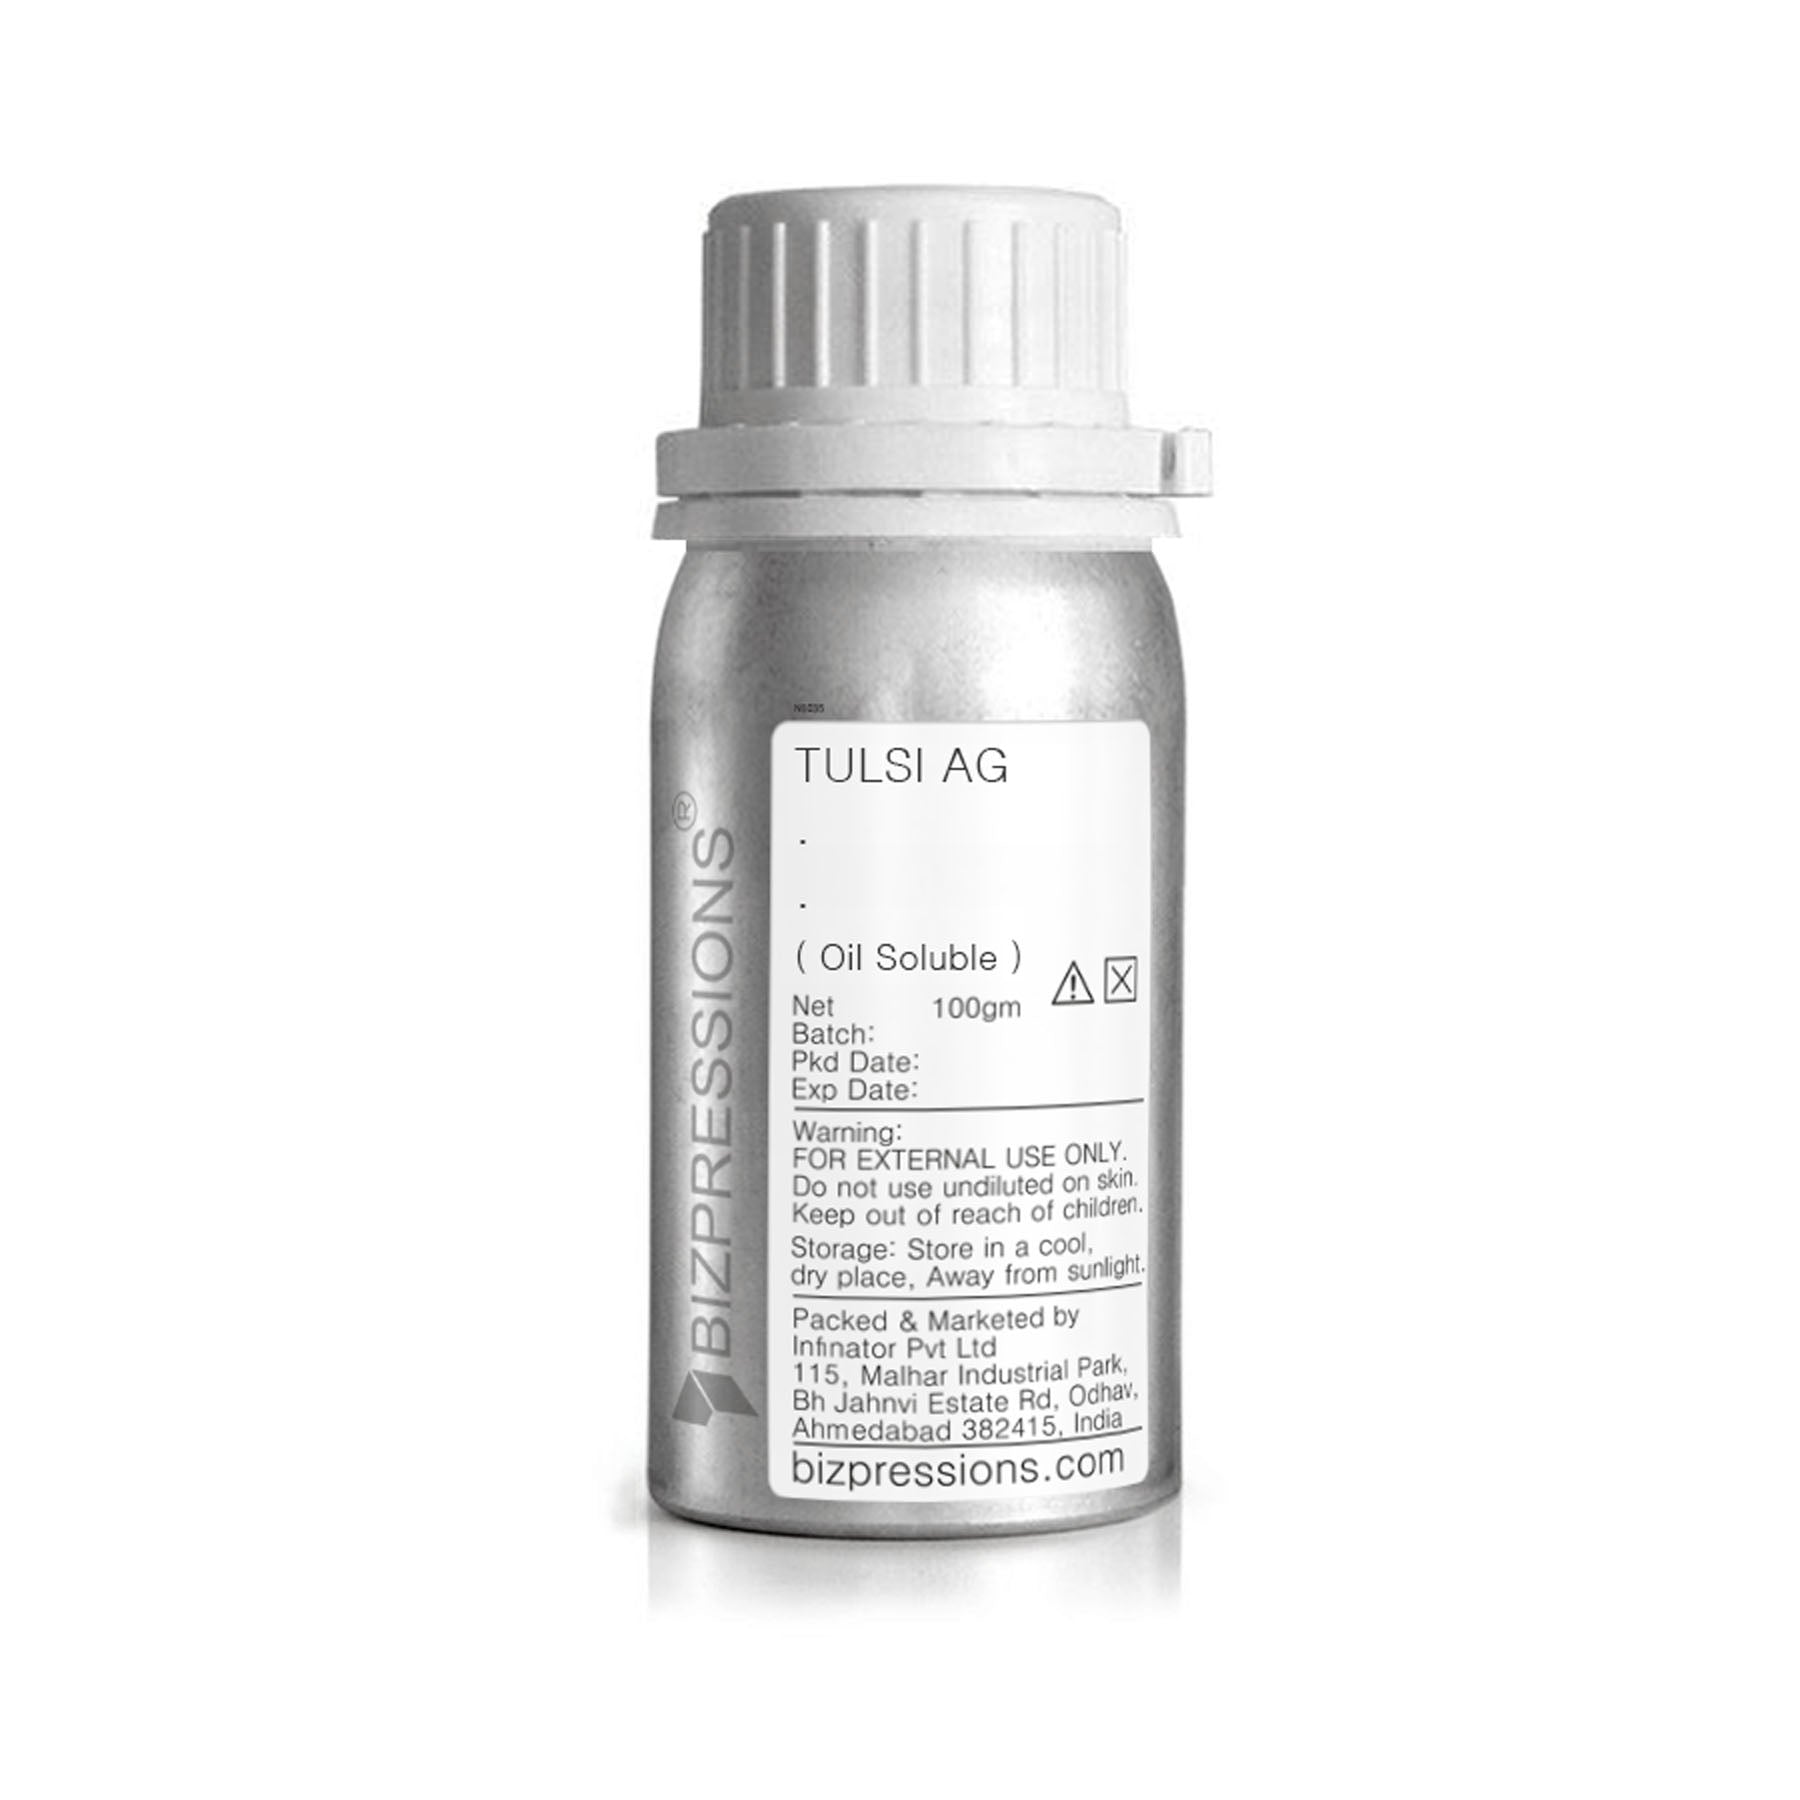 TULSI AG - Fragrance ( Oil Soluble ) - 100 gm